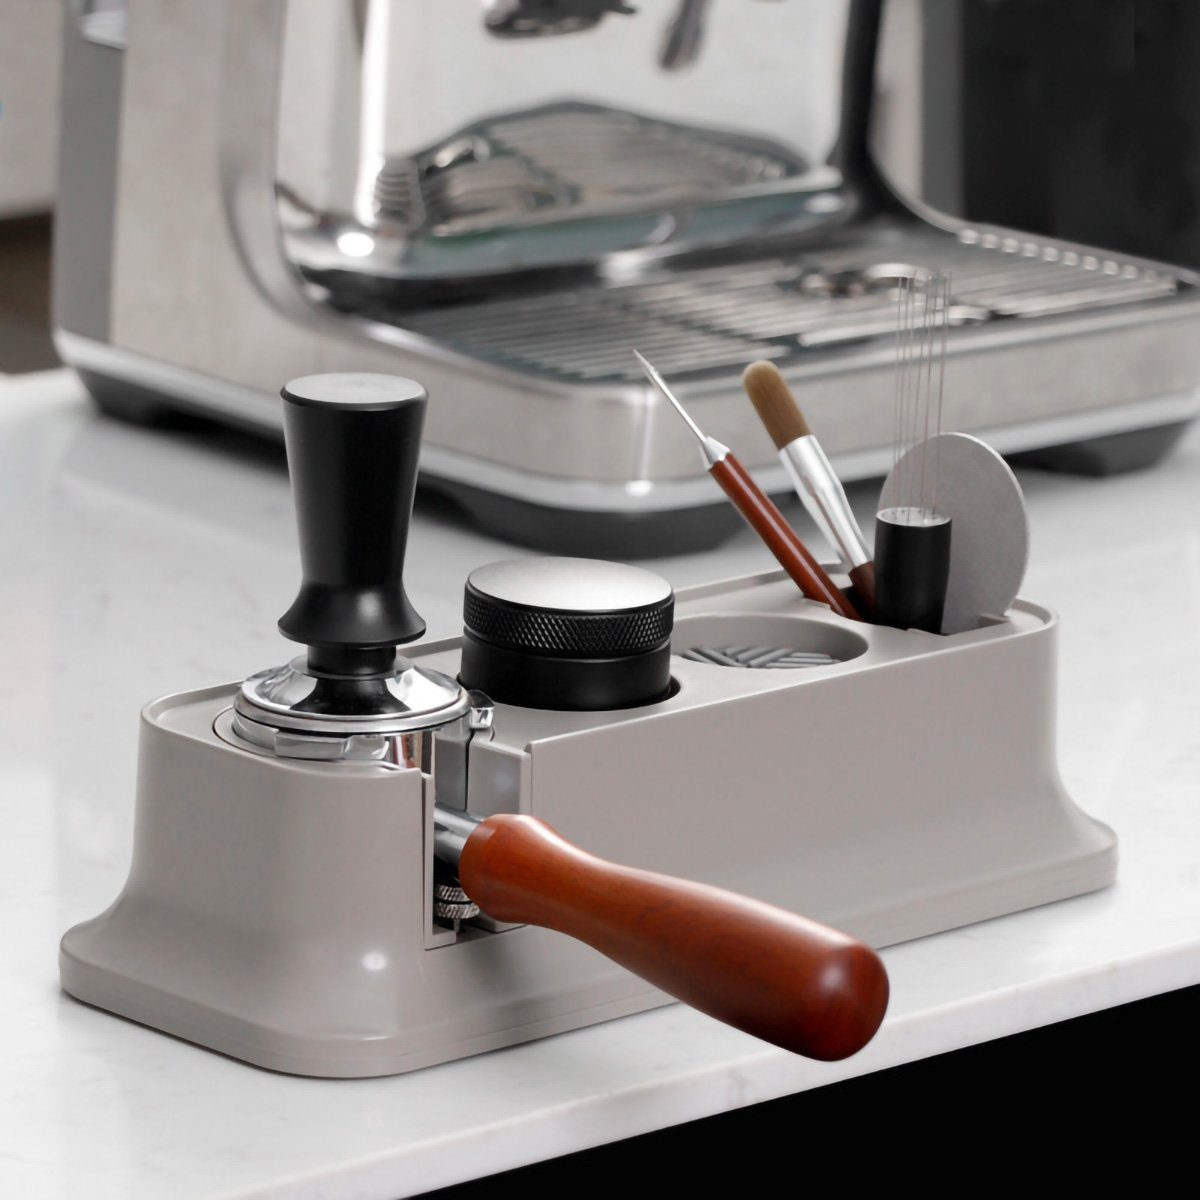 yozhiqu Tamperstation 51-58mm Espressopressen-Halter Organizer, Ordentliche Aufbewahrung für viele Größen von Füllersitzgriffen